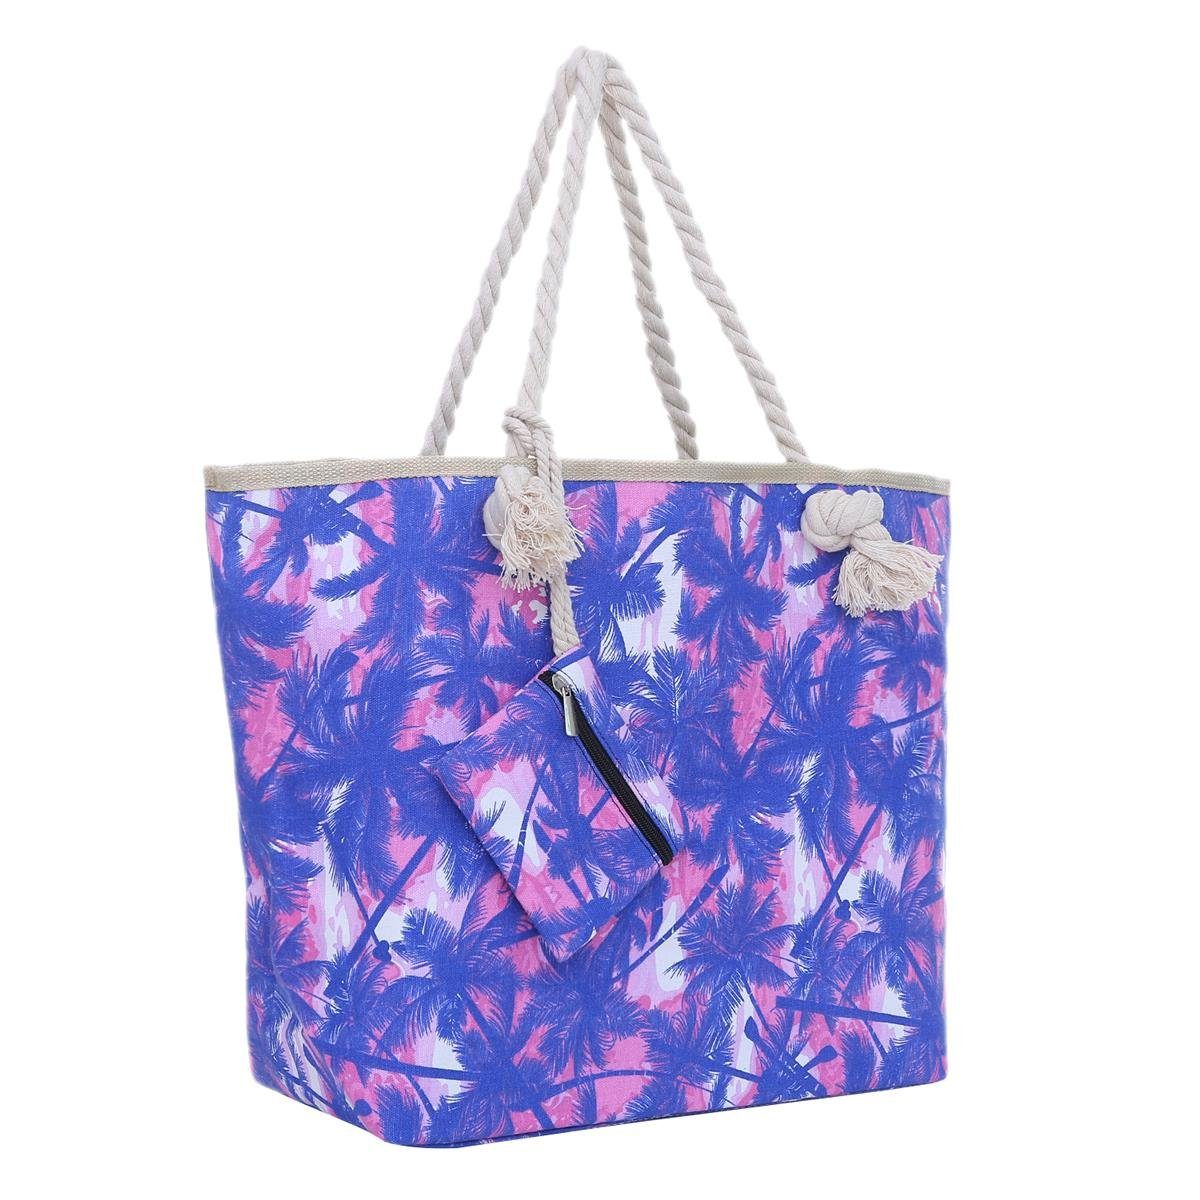 DonDon Strandtasche Shopper Schultertasche Beach Style (2-tlg), Große Strandtasche, mit Reißverschluss, tolle Motive blau-Rosa